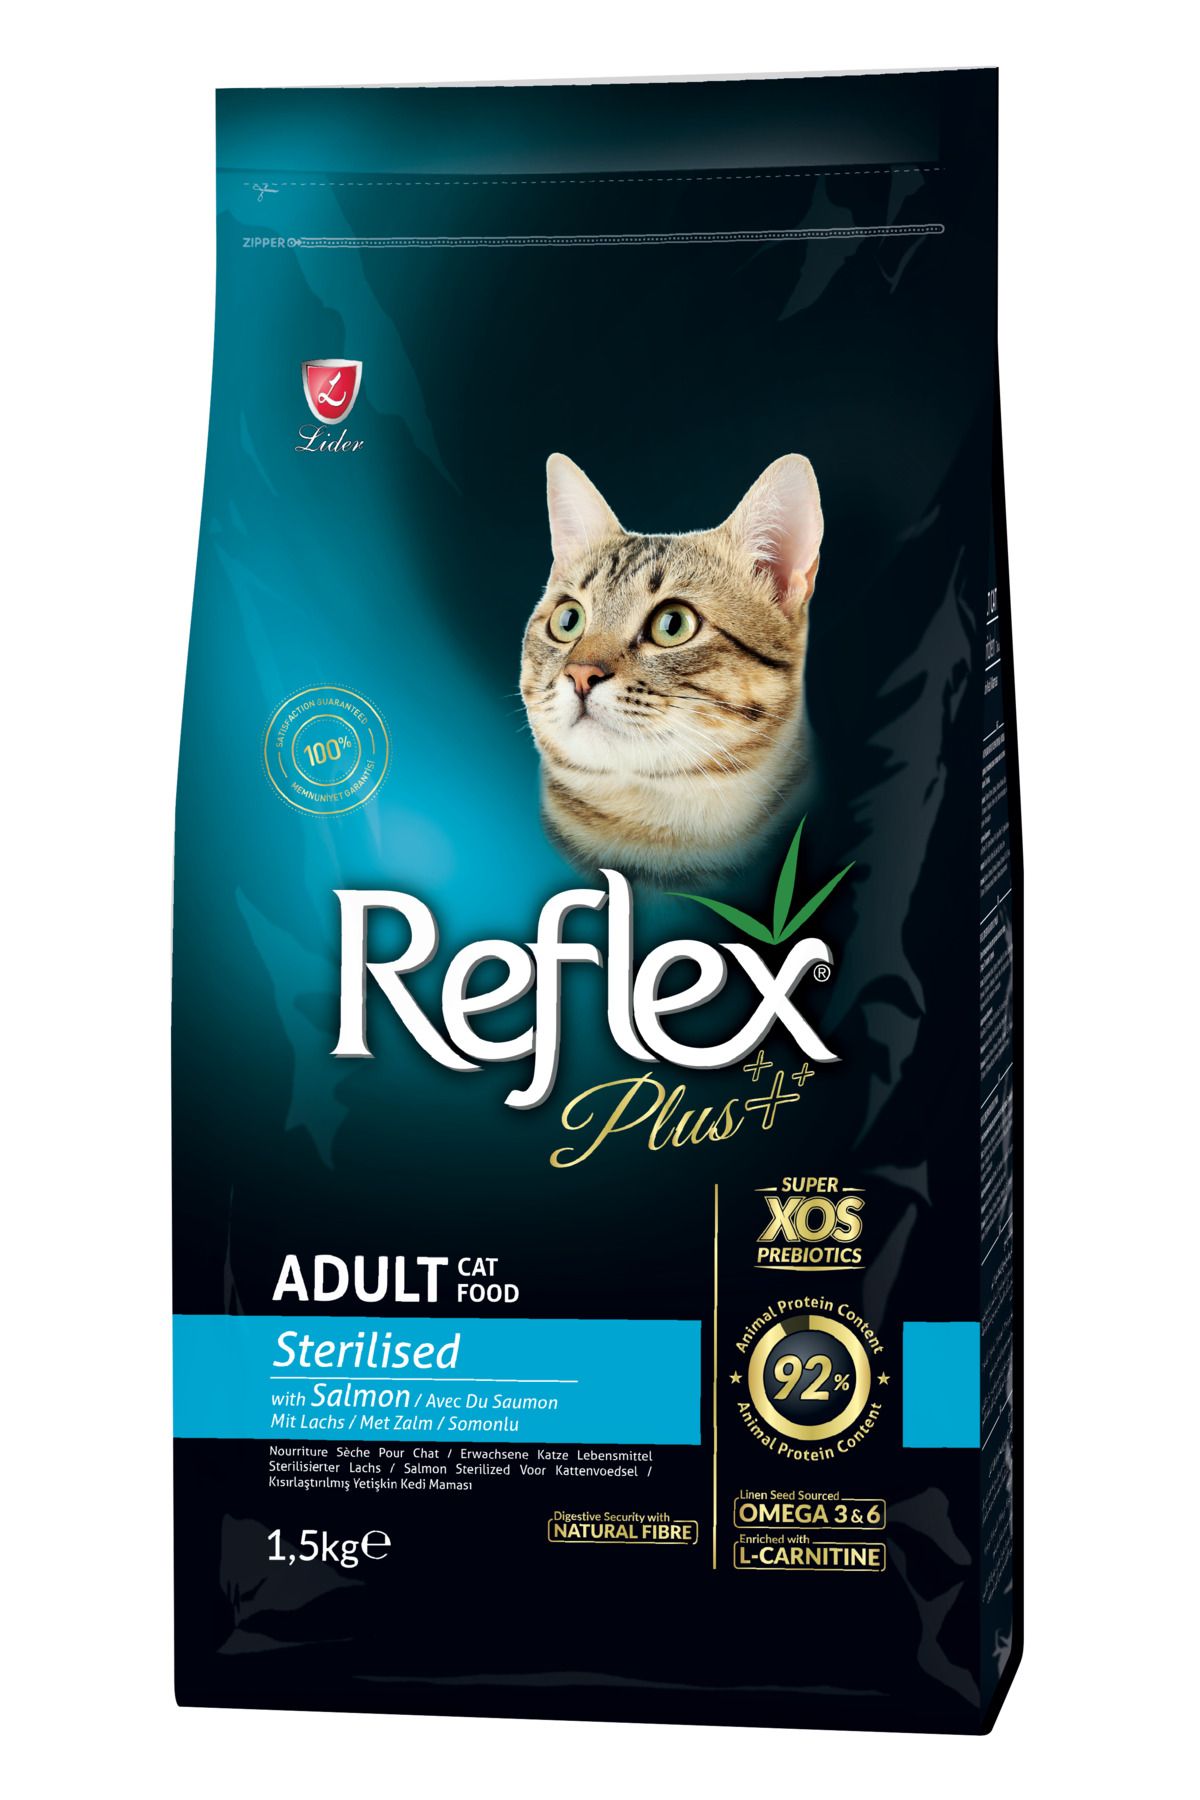 Reflex Plus Somonlu Kısırlaştırılmış Kedi Maması 1,5 Kg